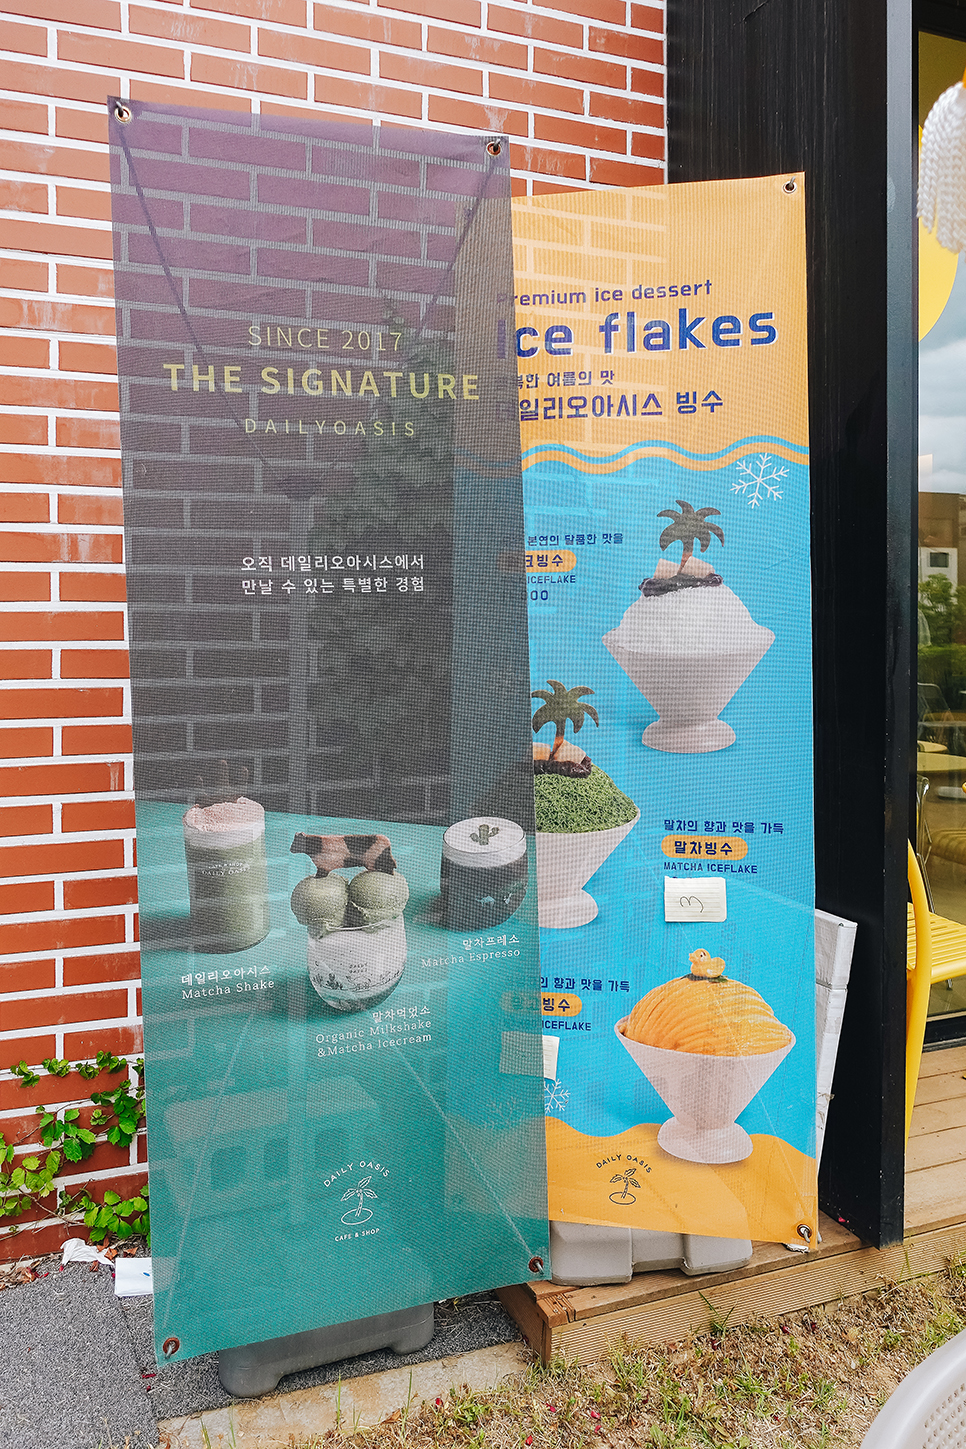 서울근교 당일치기 여행 < 심플소잉 > 컵받침 만들기 & 안양 동편마을 카페거리 < 데일리 오아시스 >